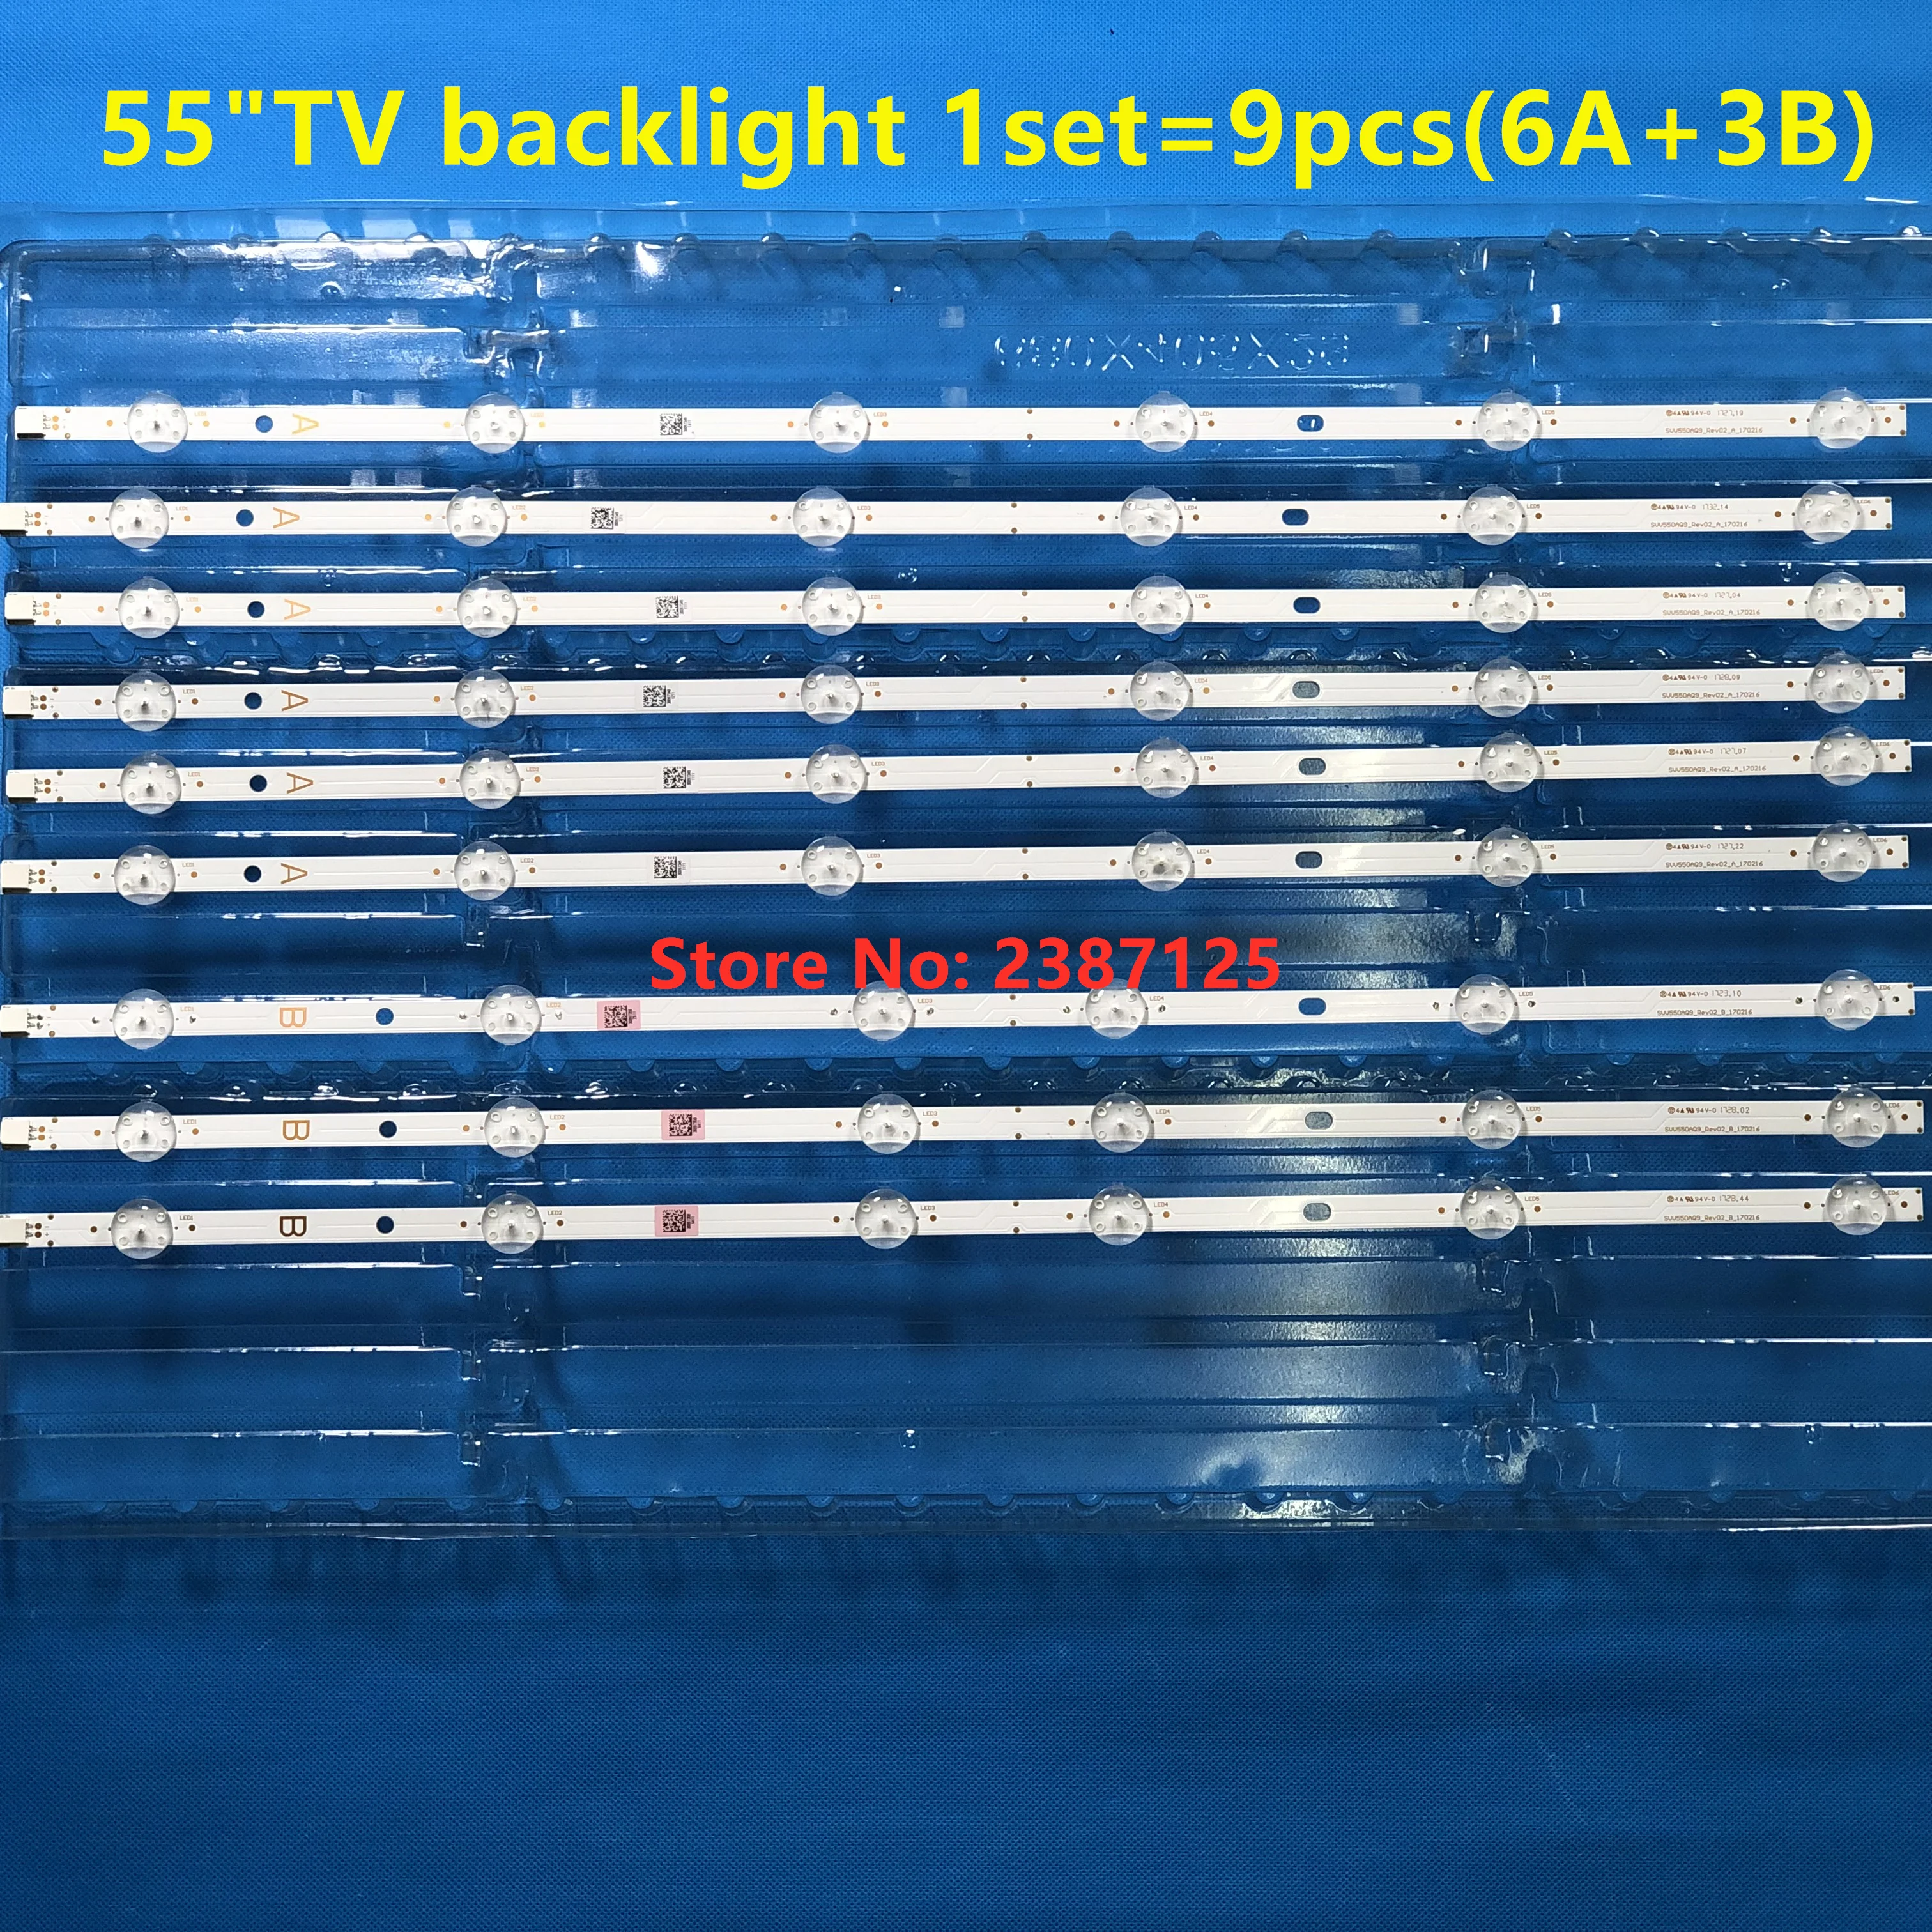 9pcs LED Strip VES550QNYL-2D-N01 VES550QNYS-2D-N01 SVV550AQ9 55T6863DB 55V5863DA 55UD8400 55UD8500 55UD8460 55UD8450 55UD8470 images - 6